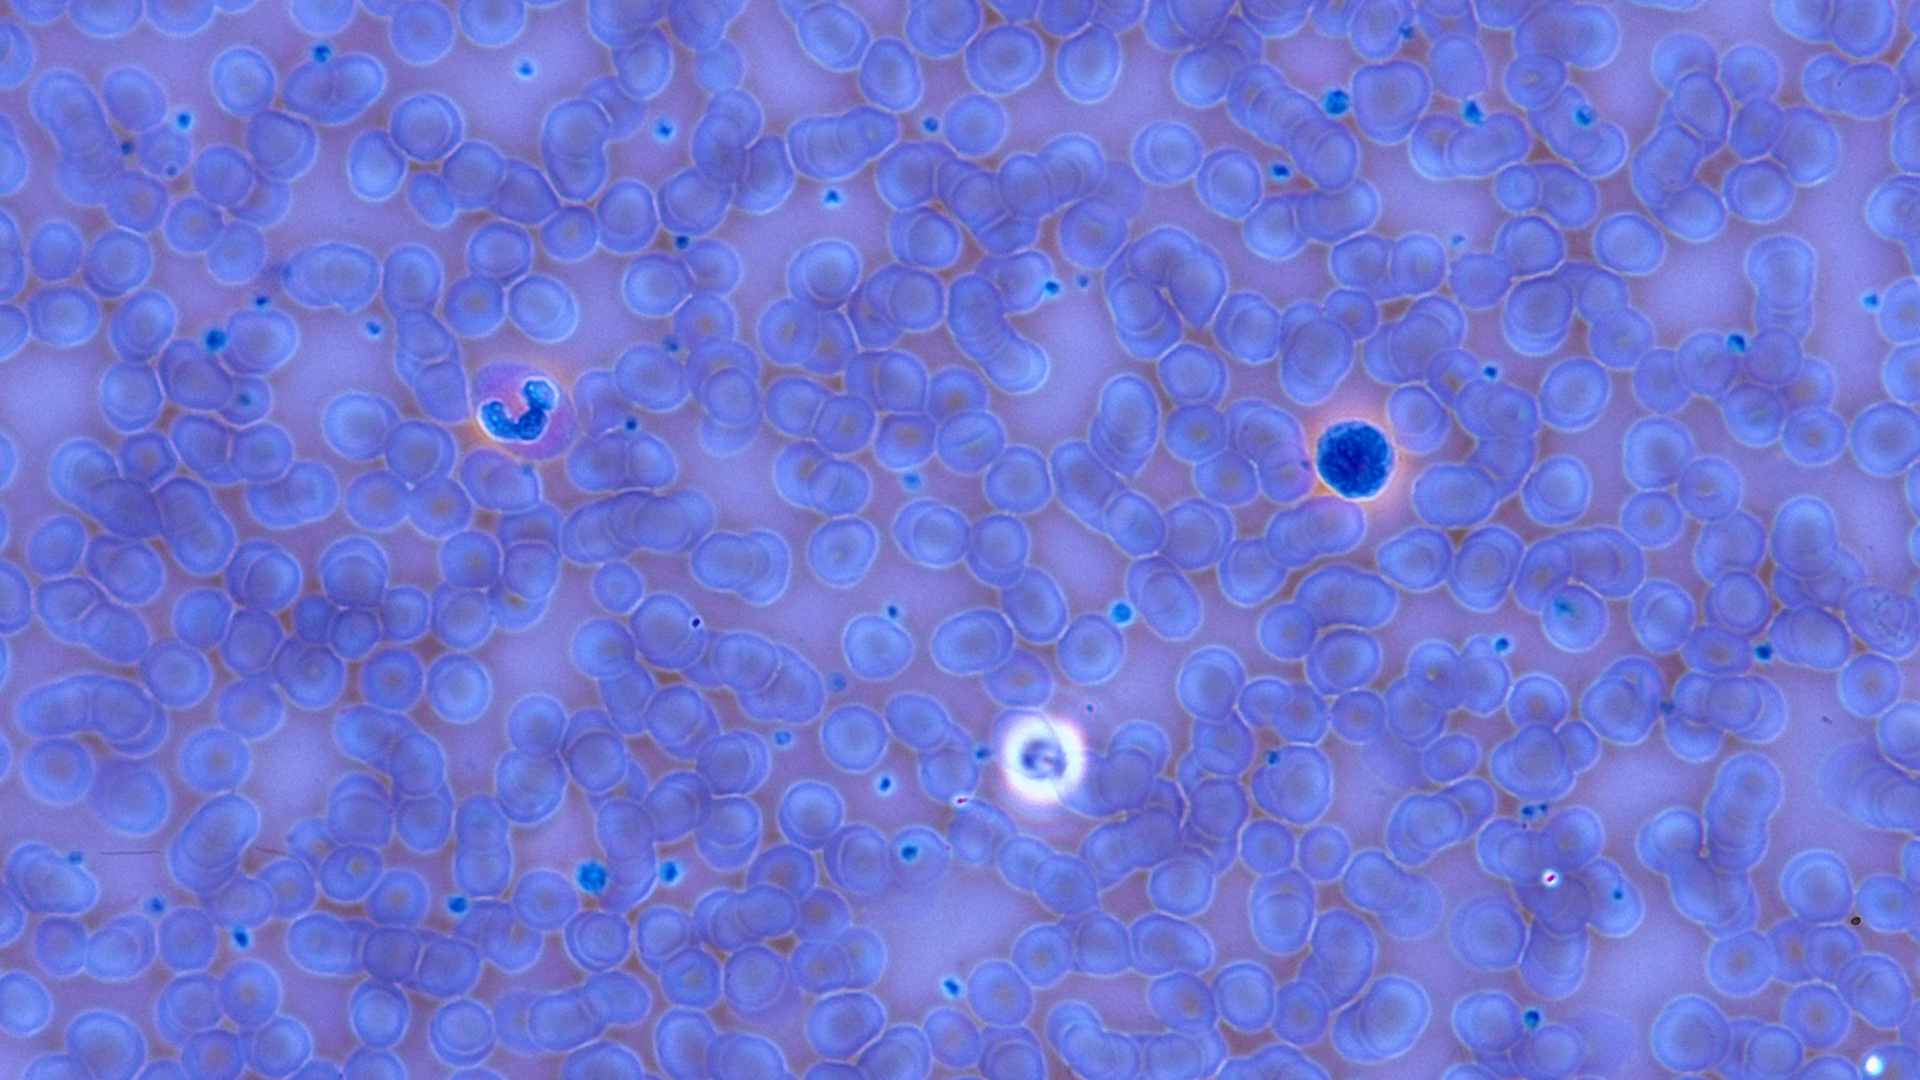 Mikroskop-Aufnahme einer infektiösen Mononukleose durch das Epstein-Barr Virus im Blutbild. | picture-alliance / OKAPIA KG, Ge